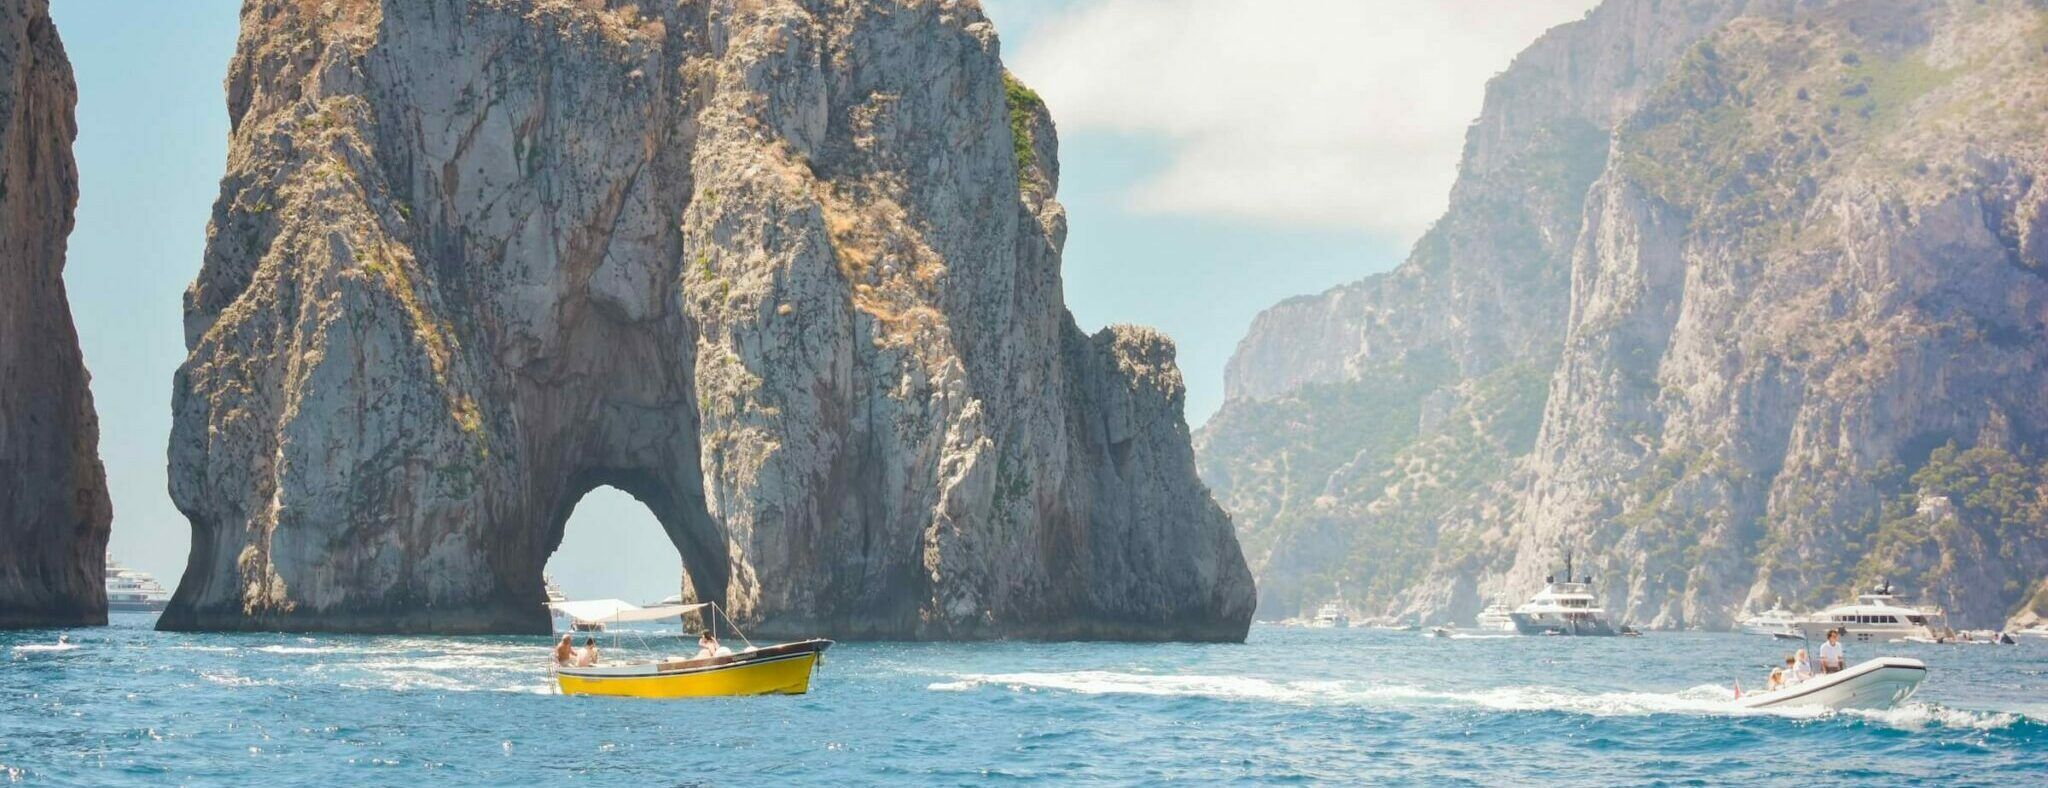 Touristenboote auf dem Wasser vor den Faraglioni-Felsen